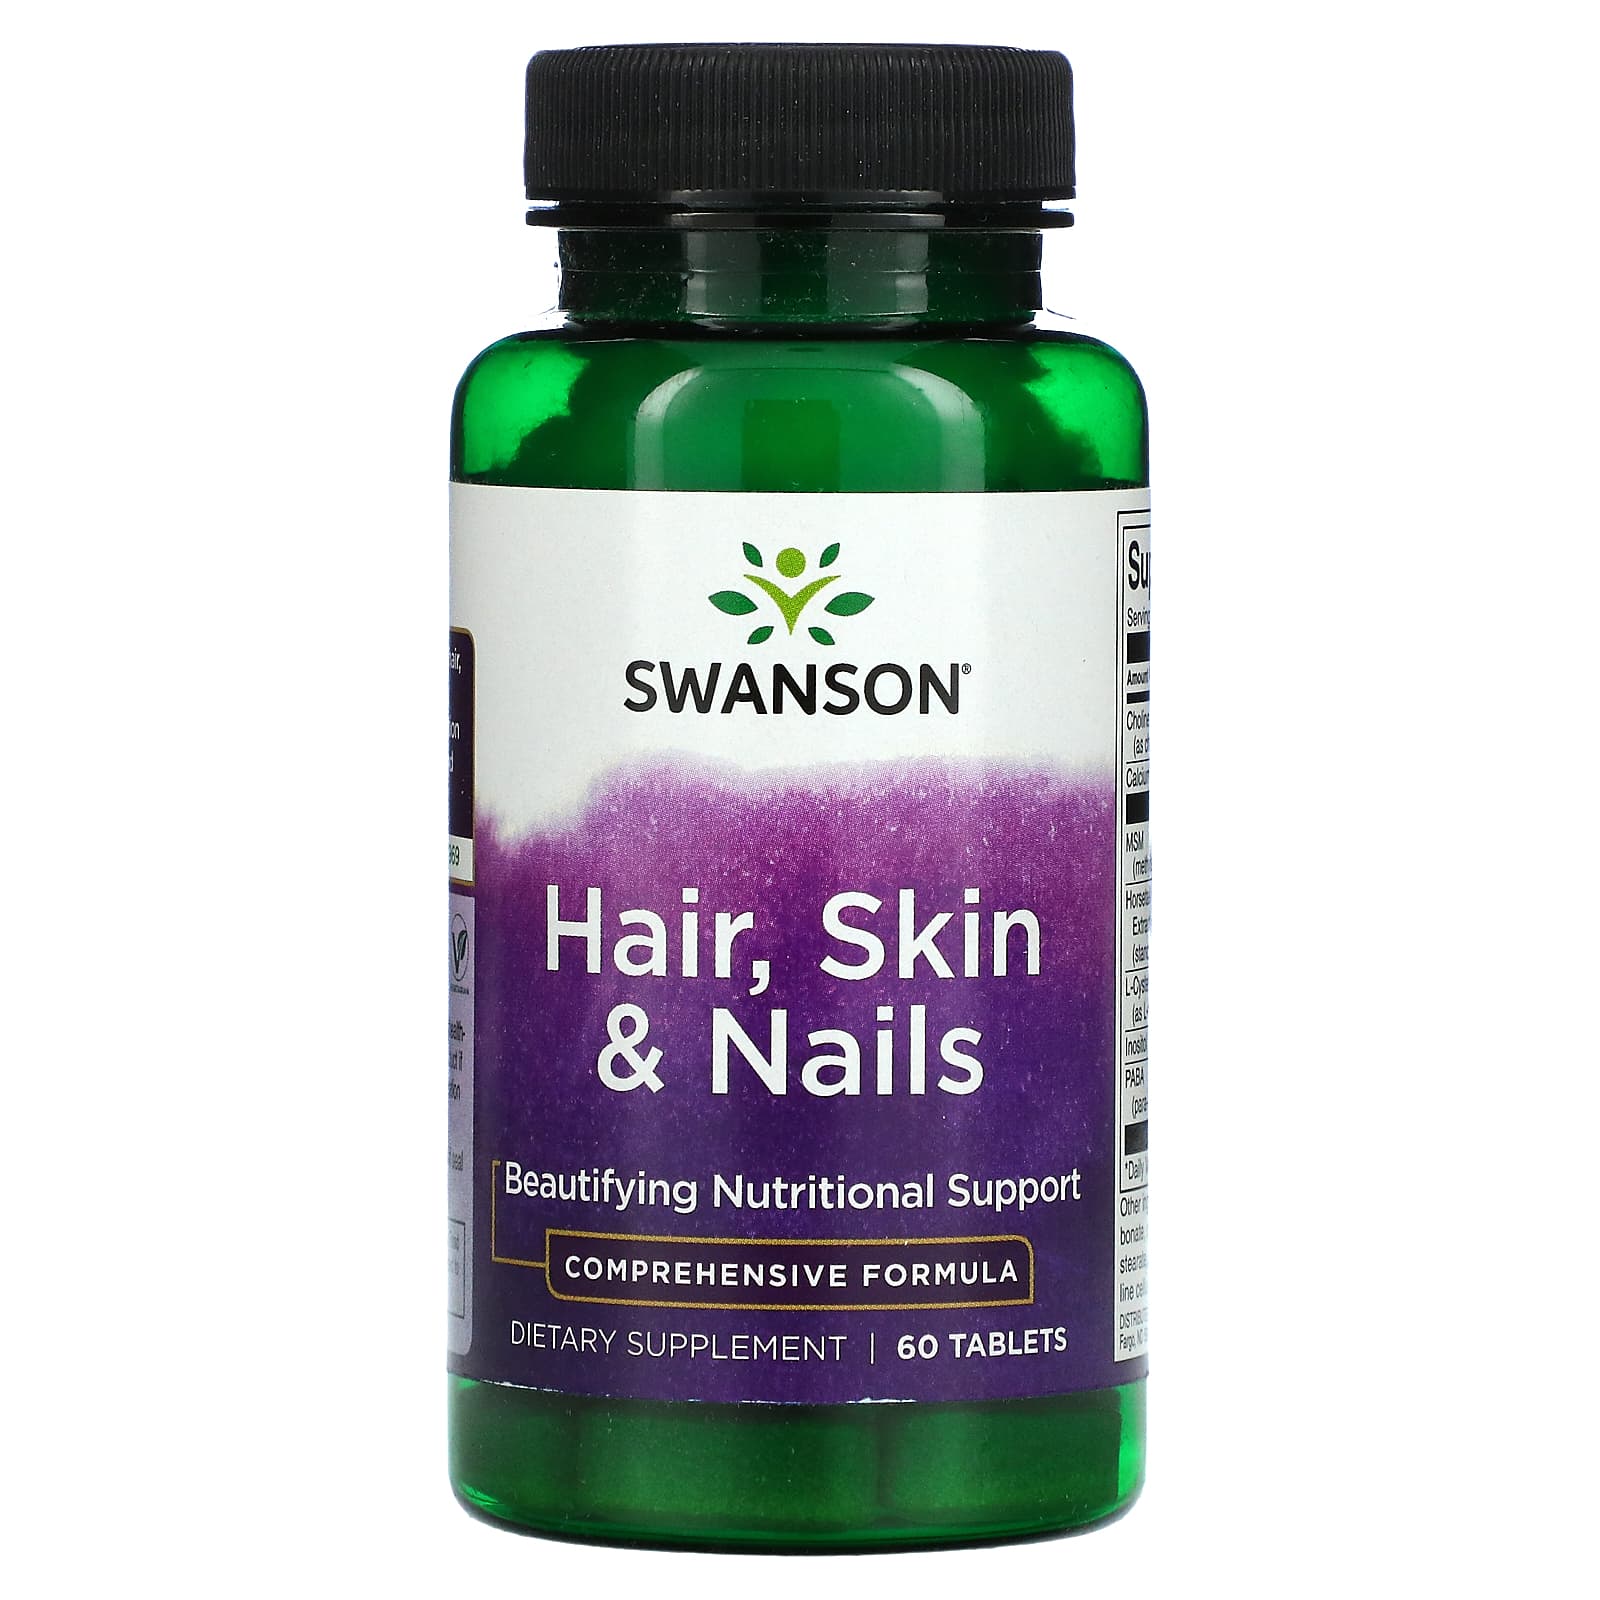 Витамины Swanson для волос, кожи, ногтей, 60 таблеток витамины а и d swanson 250 таблеток